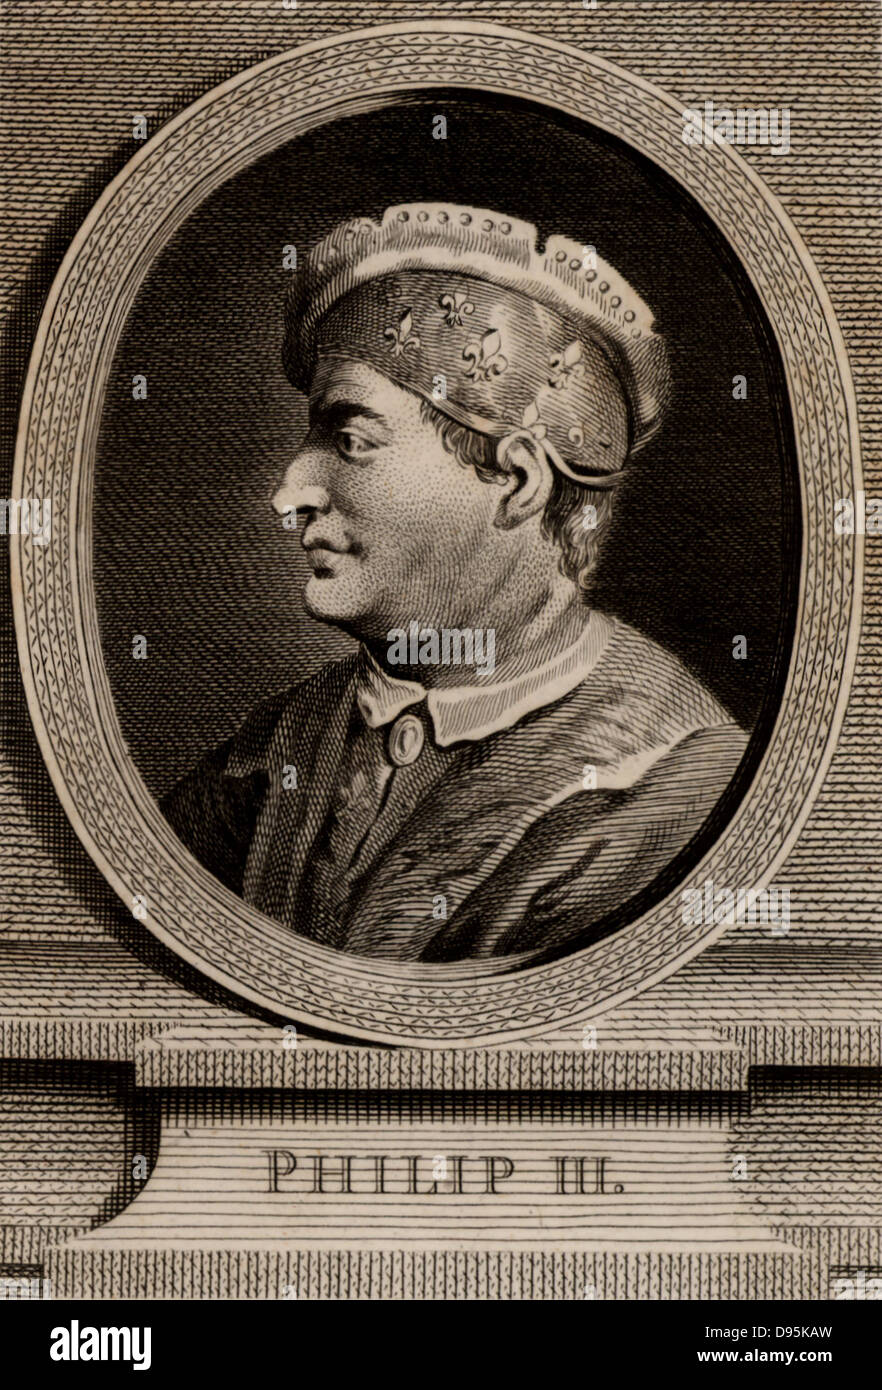 Philippe III, le Hardi (1245-1285) membre de la dynastie capétienne, roi de France de 1270. La gravure sur cuivre, 1793. Banque D'Images